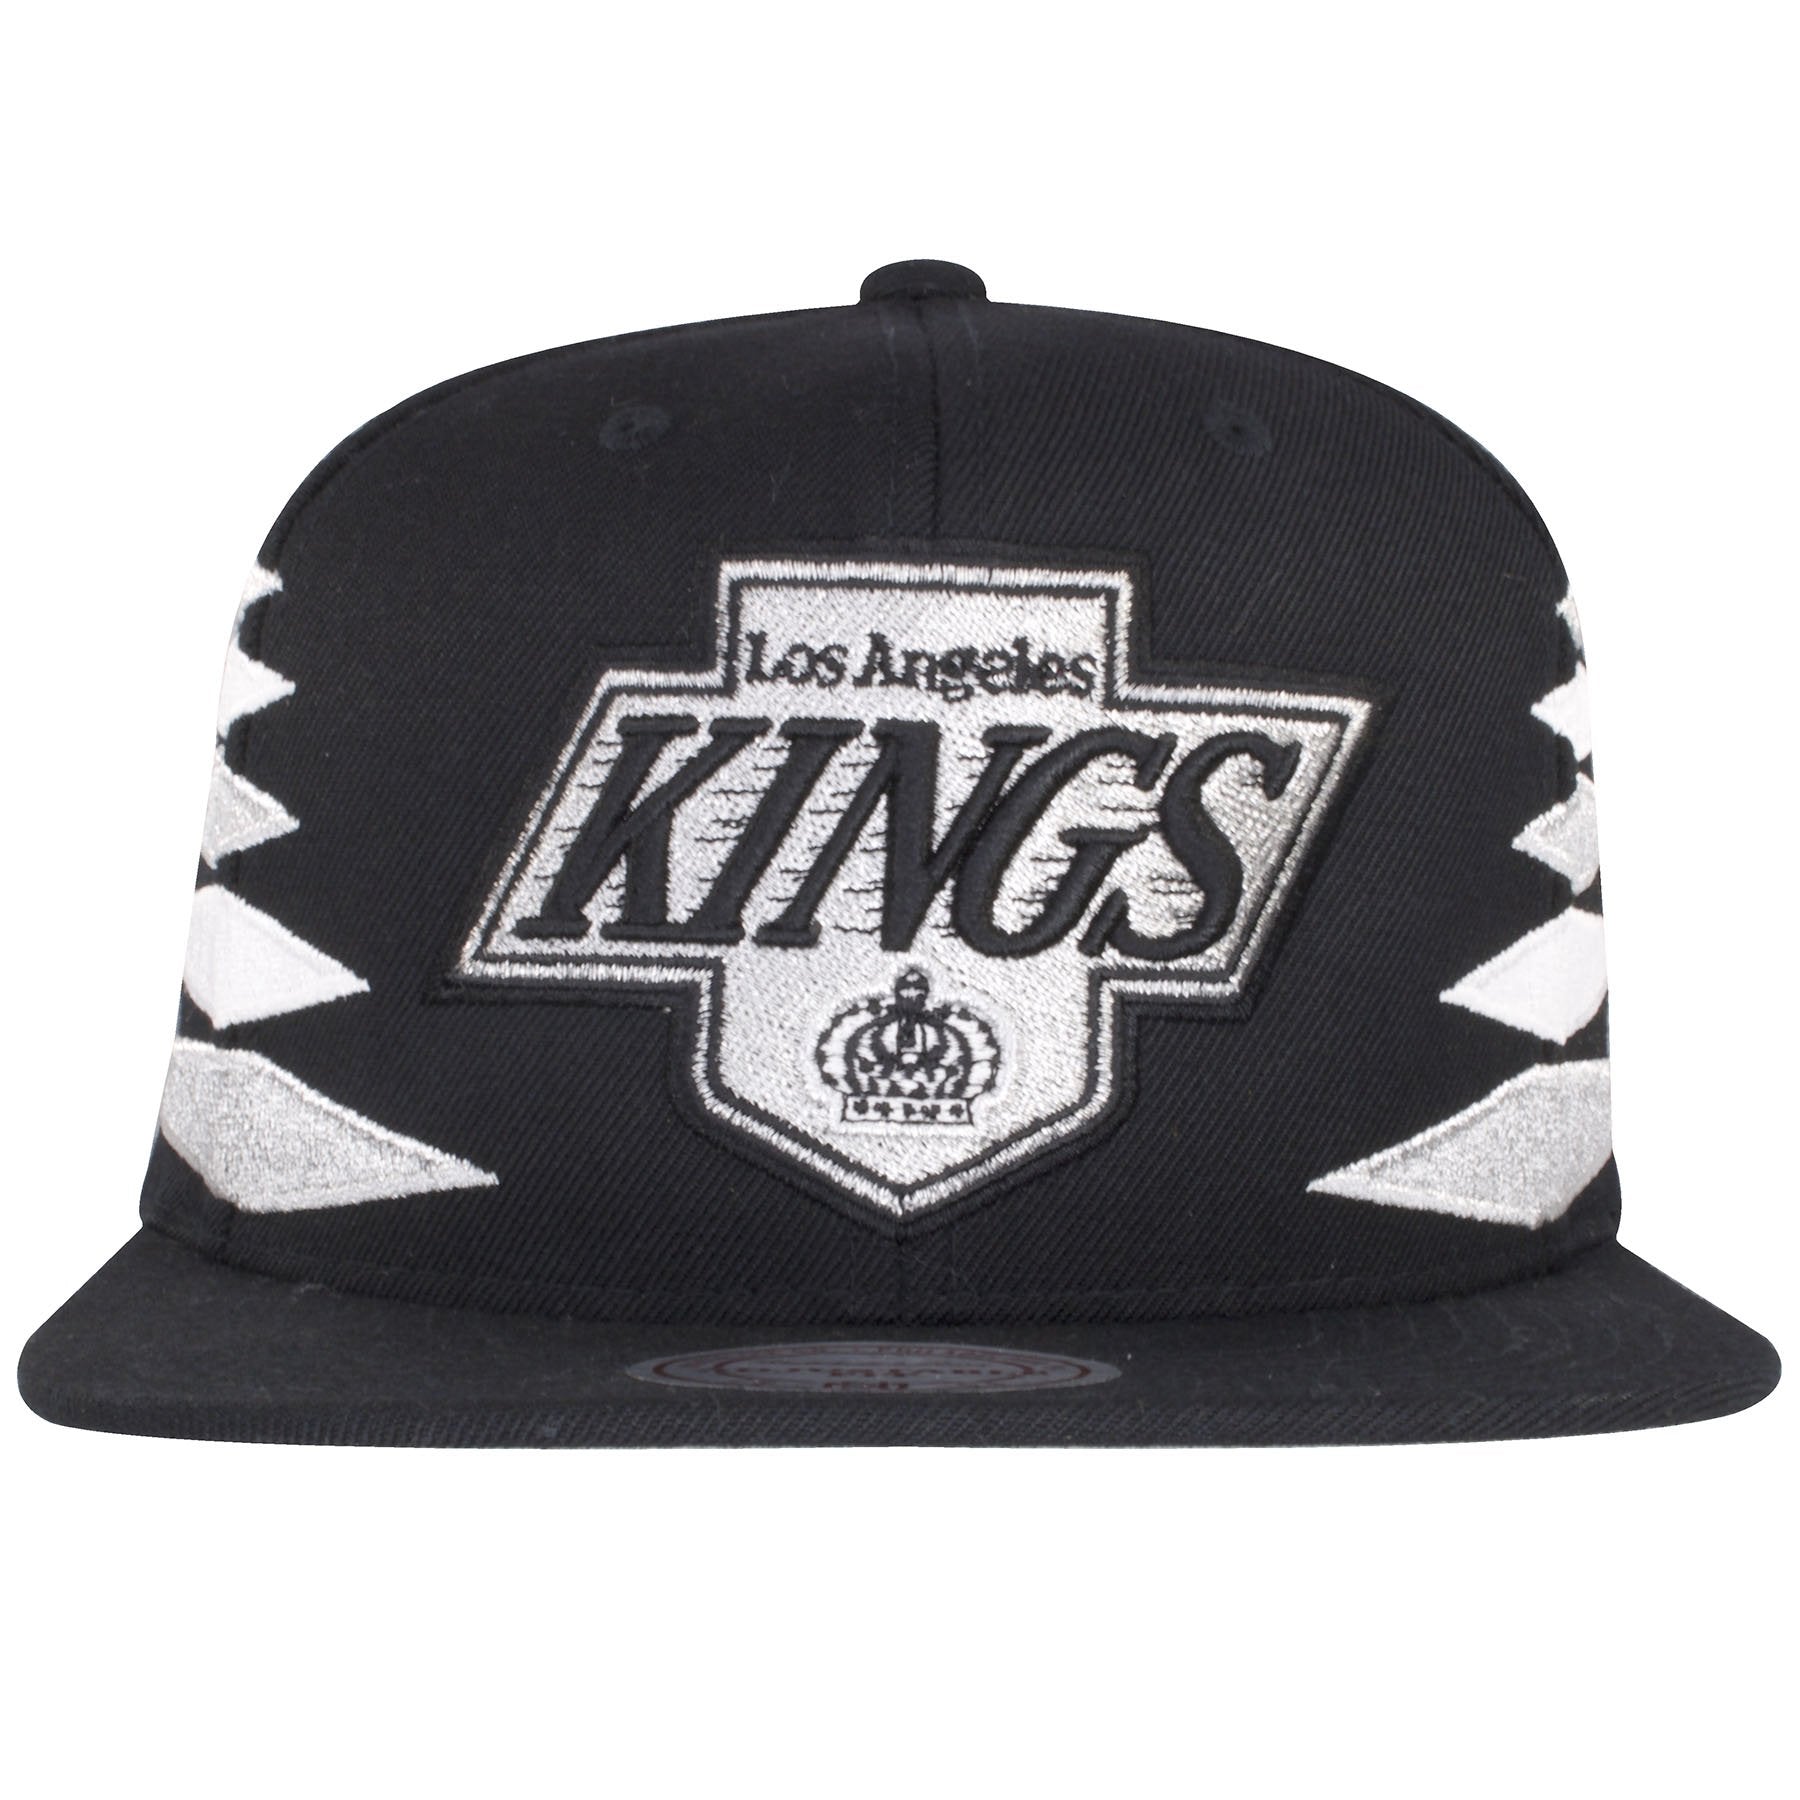 la kings throwback hat